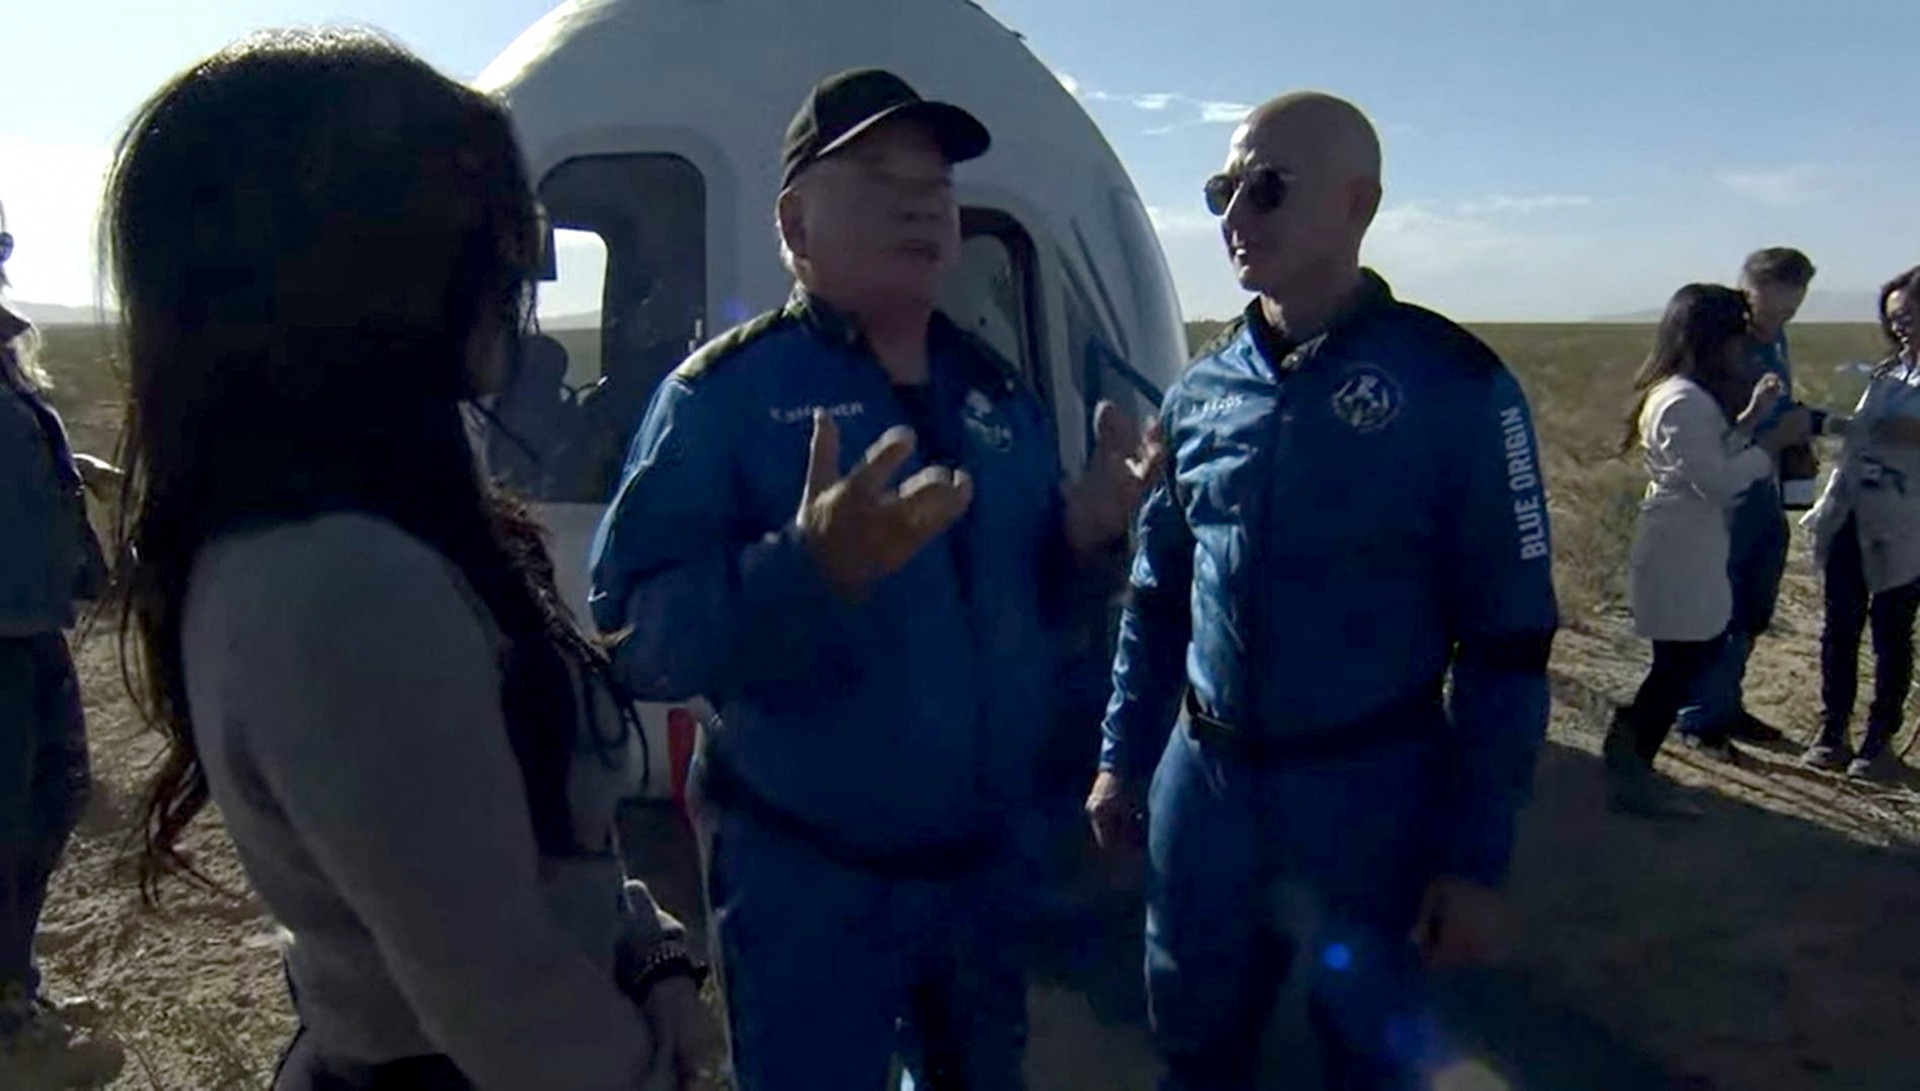 O ator William Shatner fala com o fundador da Blue Origin, Jeff Bezos, após 'bate-volta' ao espaço - AFP